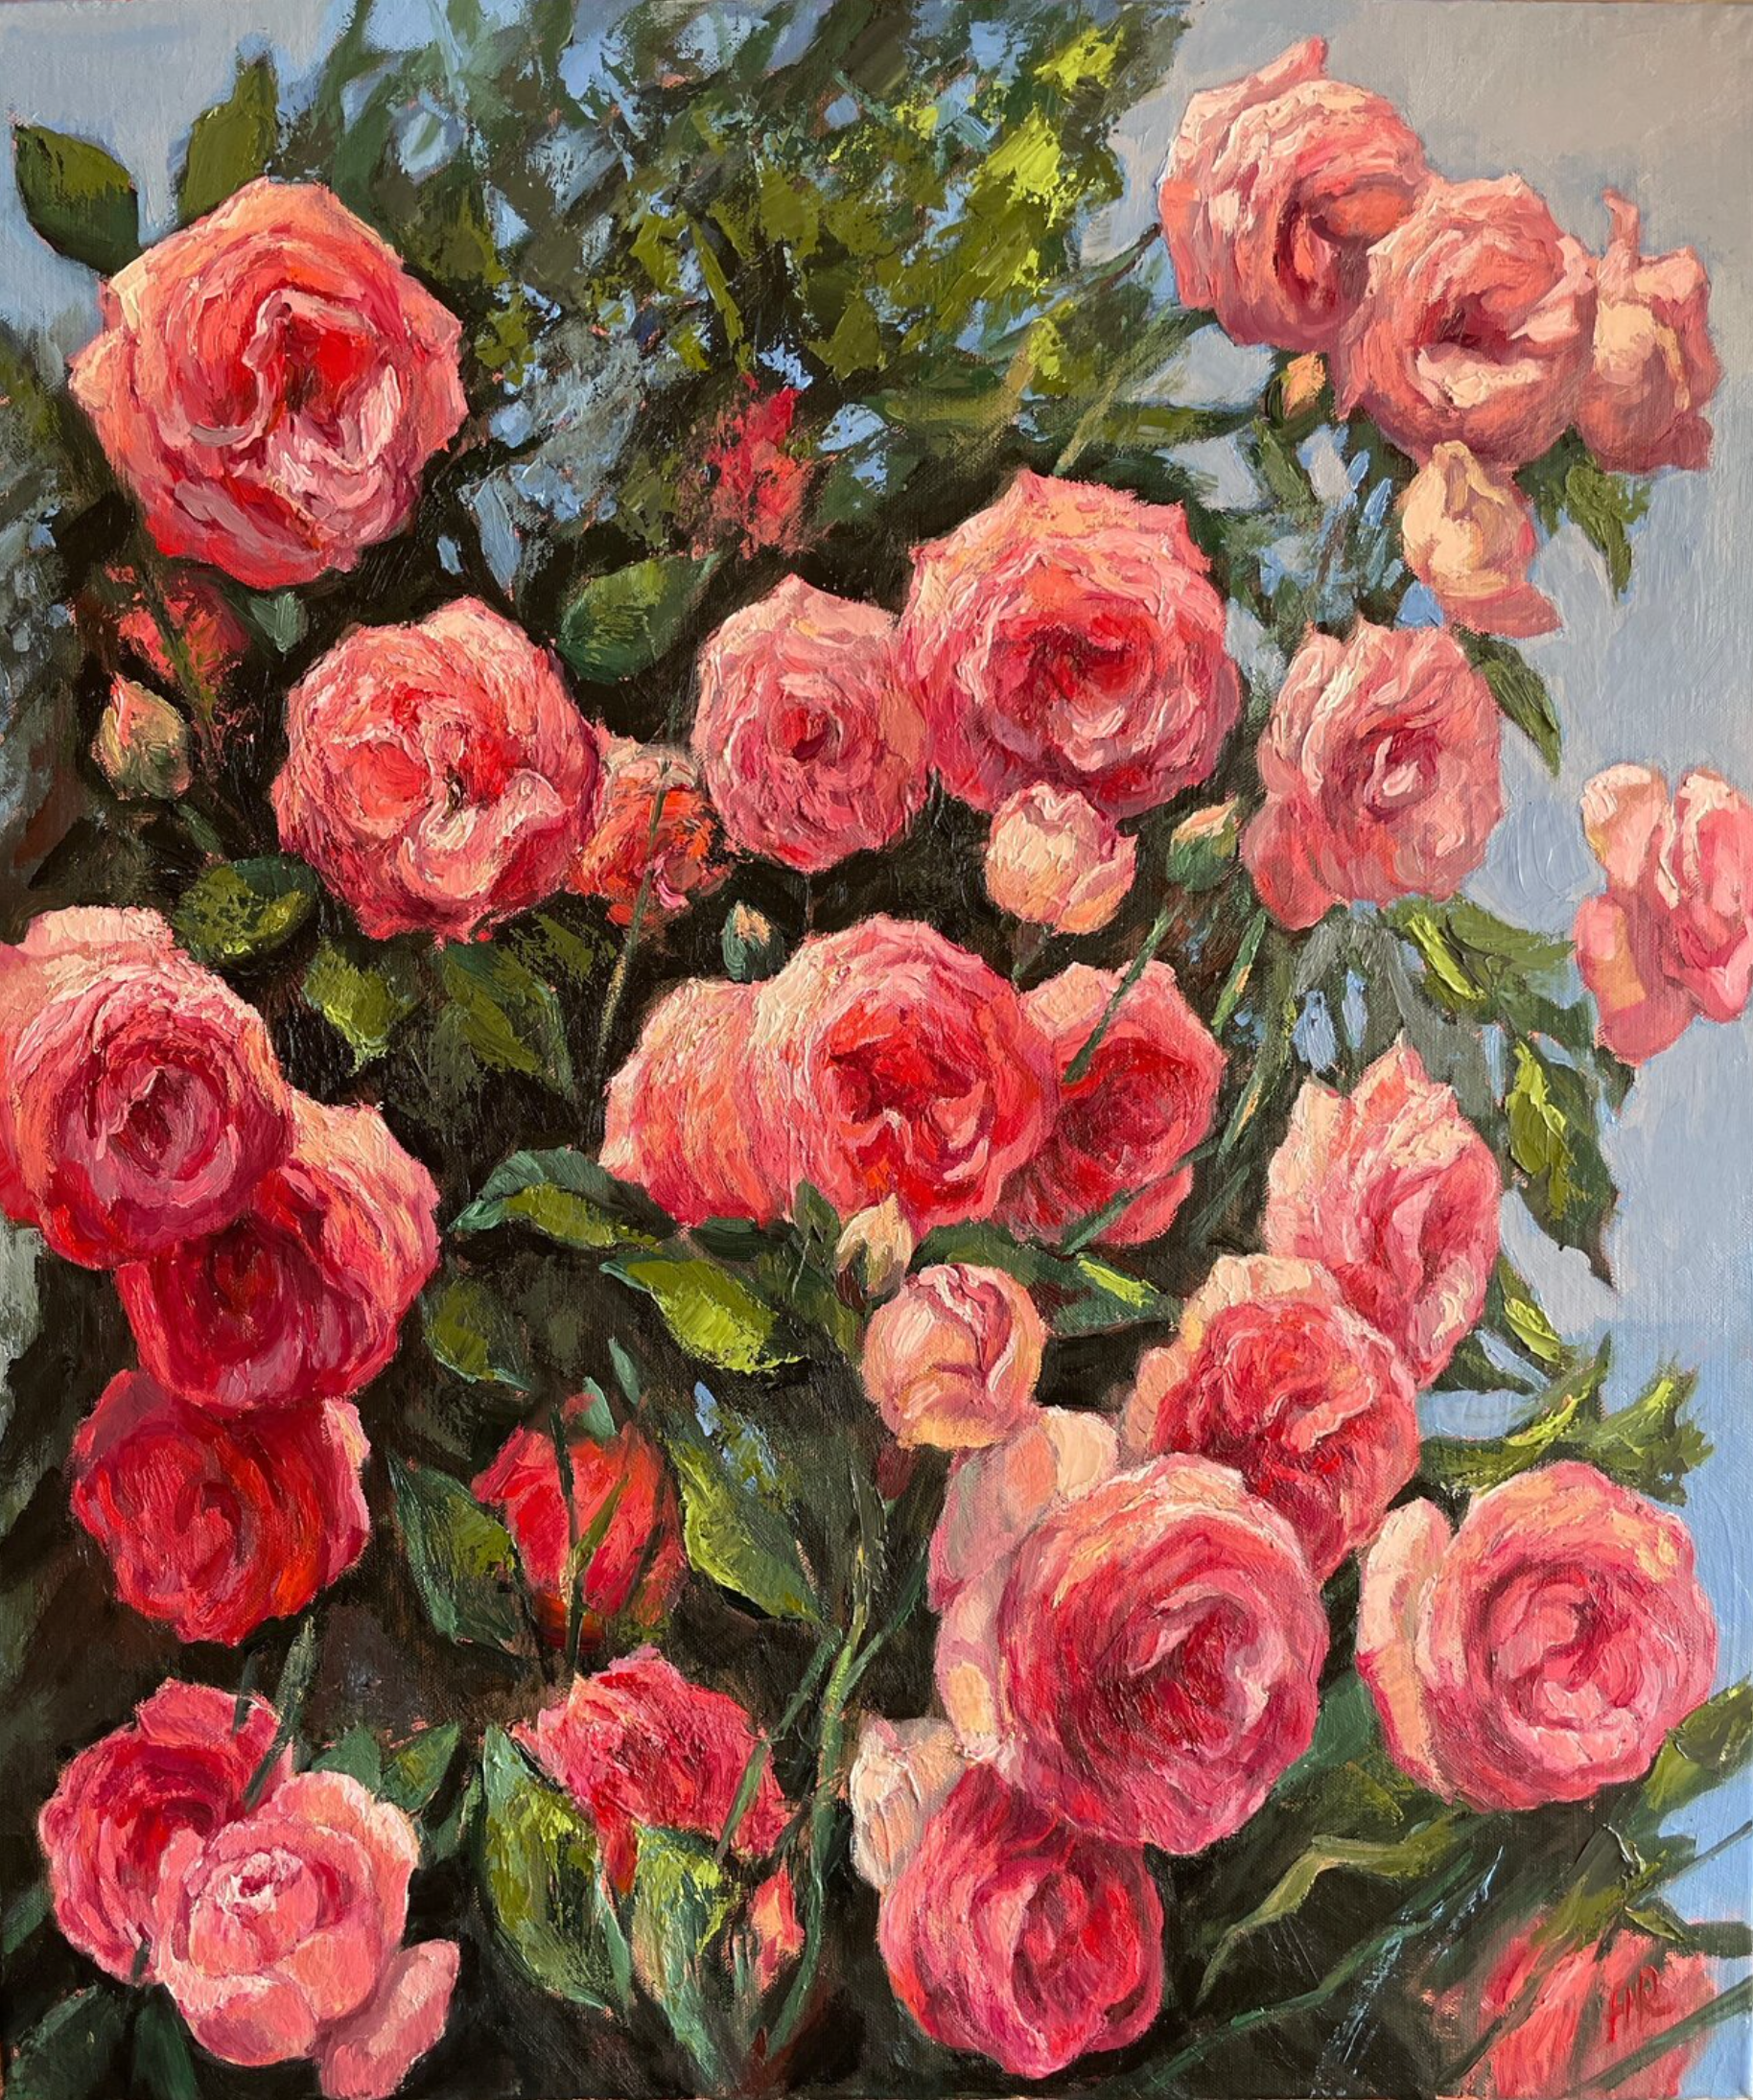 El cuadro "Vislumbre de verano" de Anna Reznikova muestra, con voluminosos trazos en técnica de impresión y pintadas con pincel sobre el lienzo, preciosas flores de rosal. Las flores son de color rosa, rosa y rojo, con hojas de color verde claro.